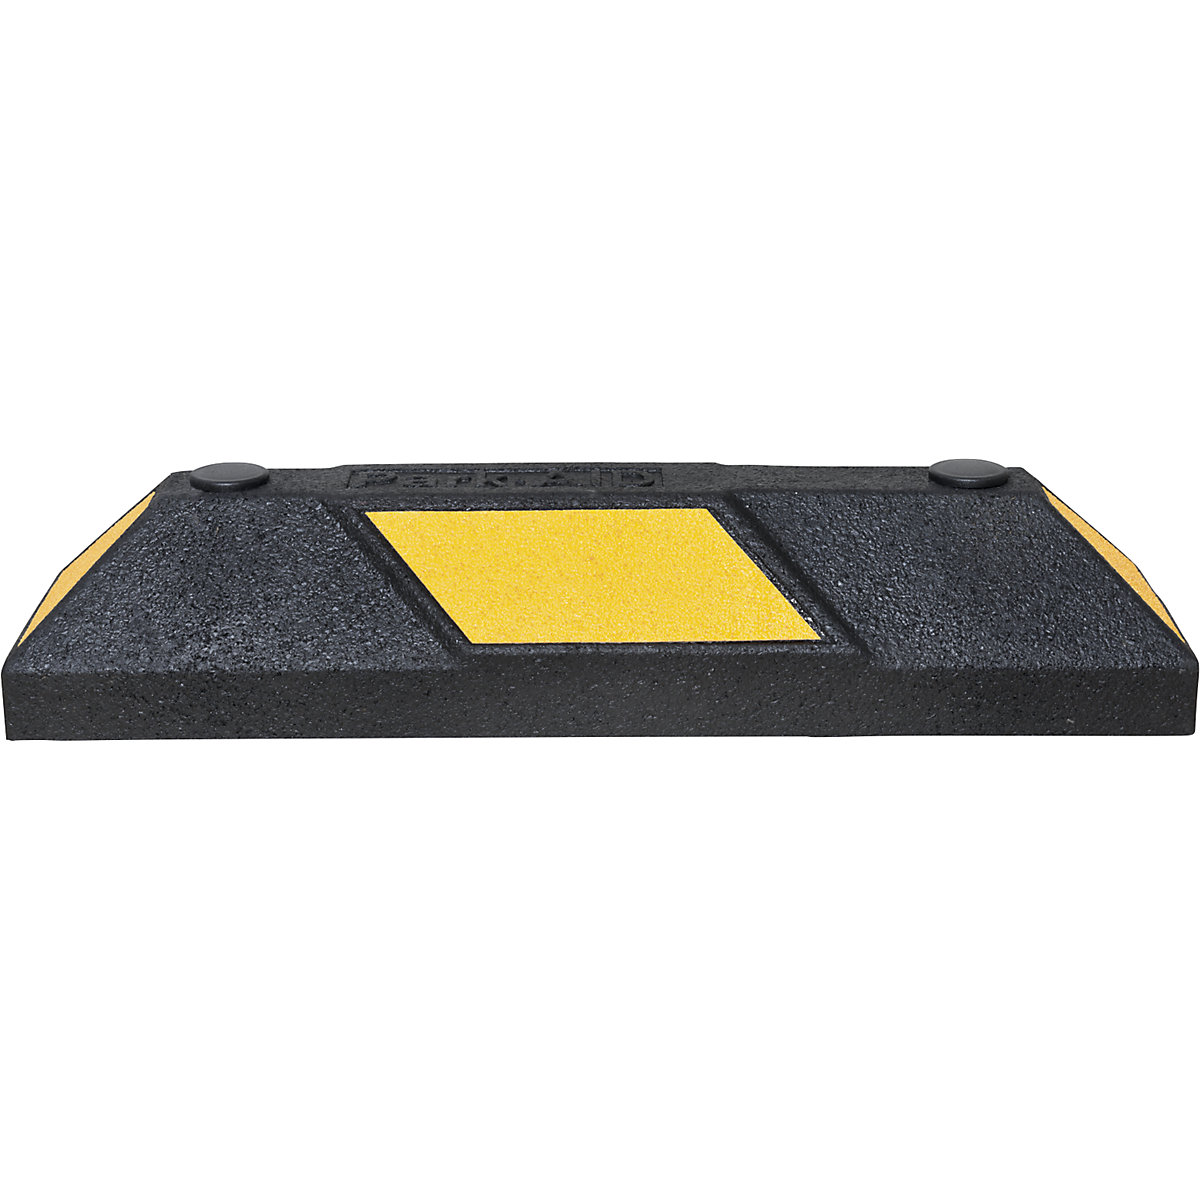 Délimitation de parking Park-AID®, L x l x h 550 x 150 x 100 mm, noir/jaune